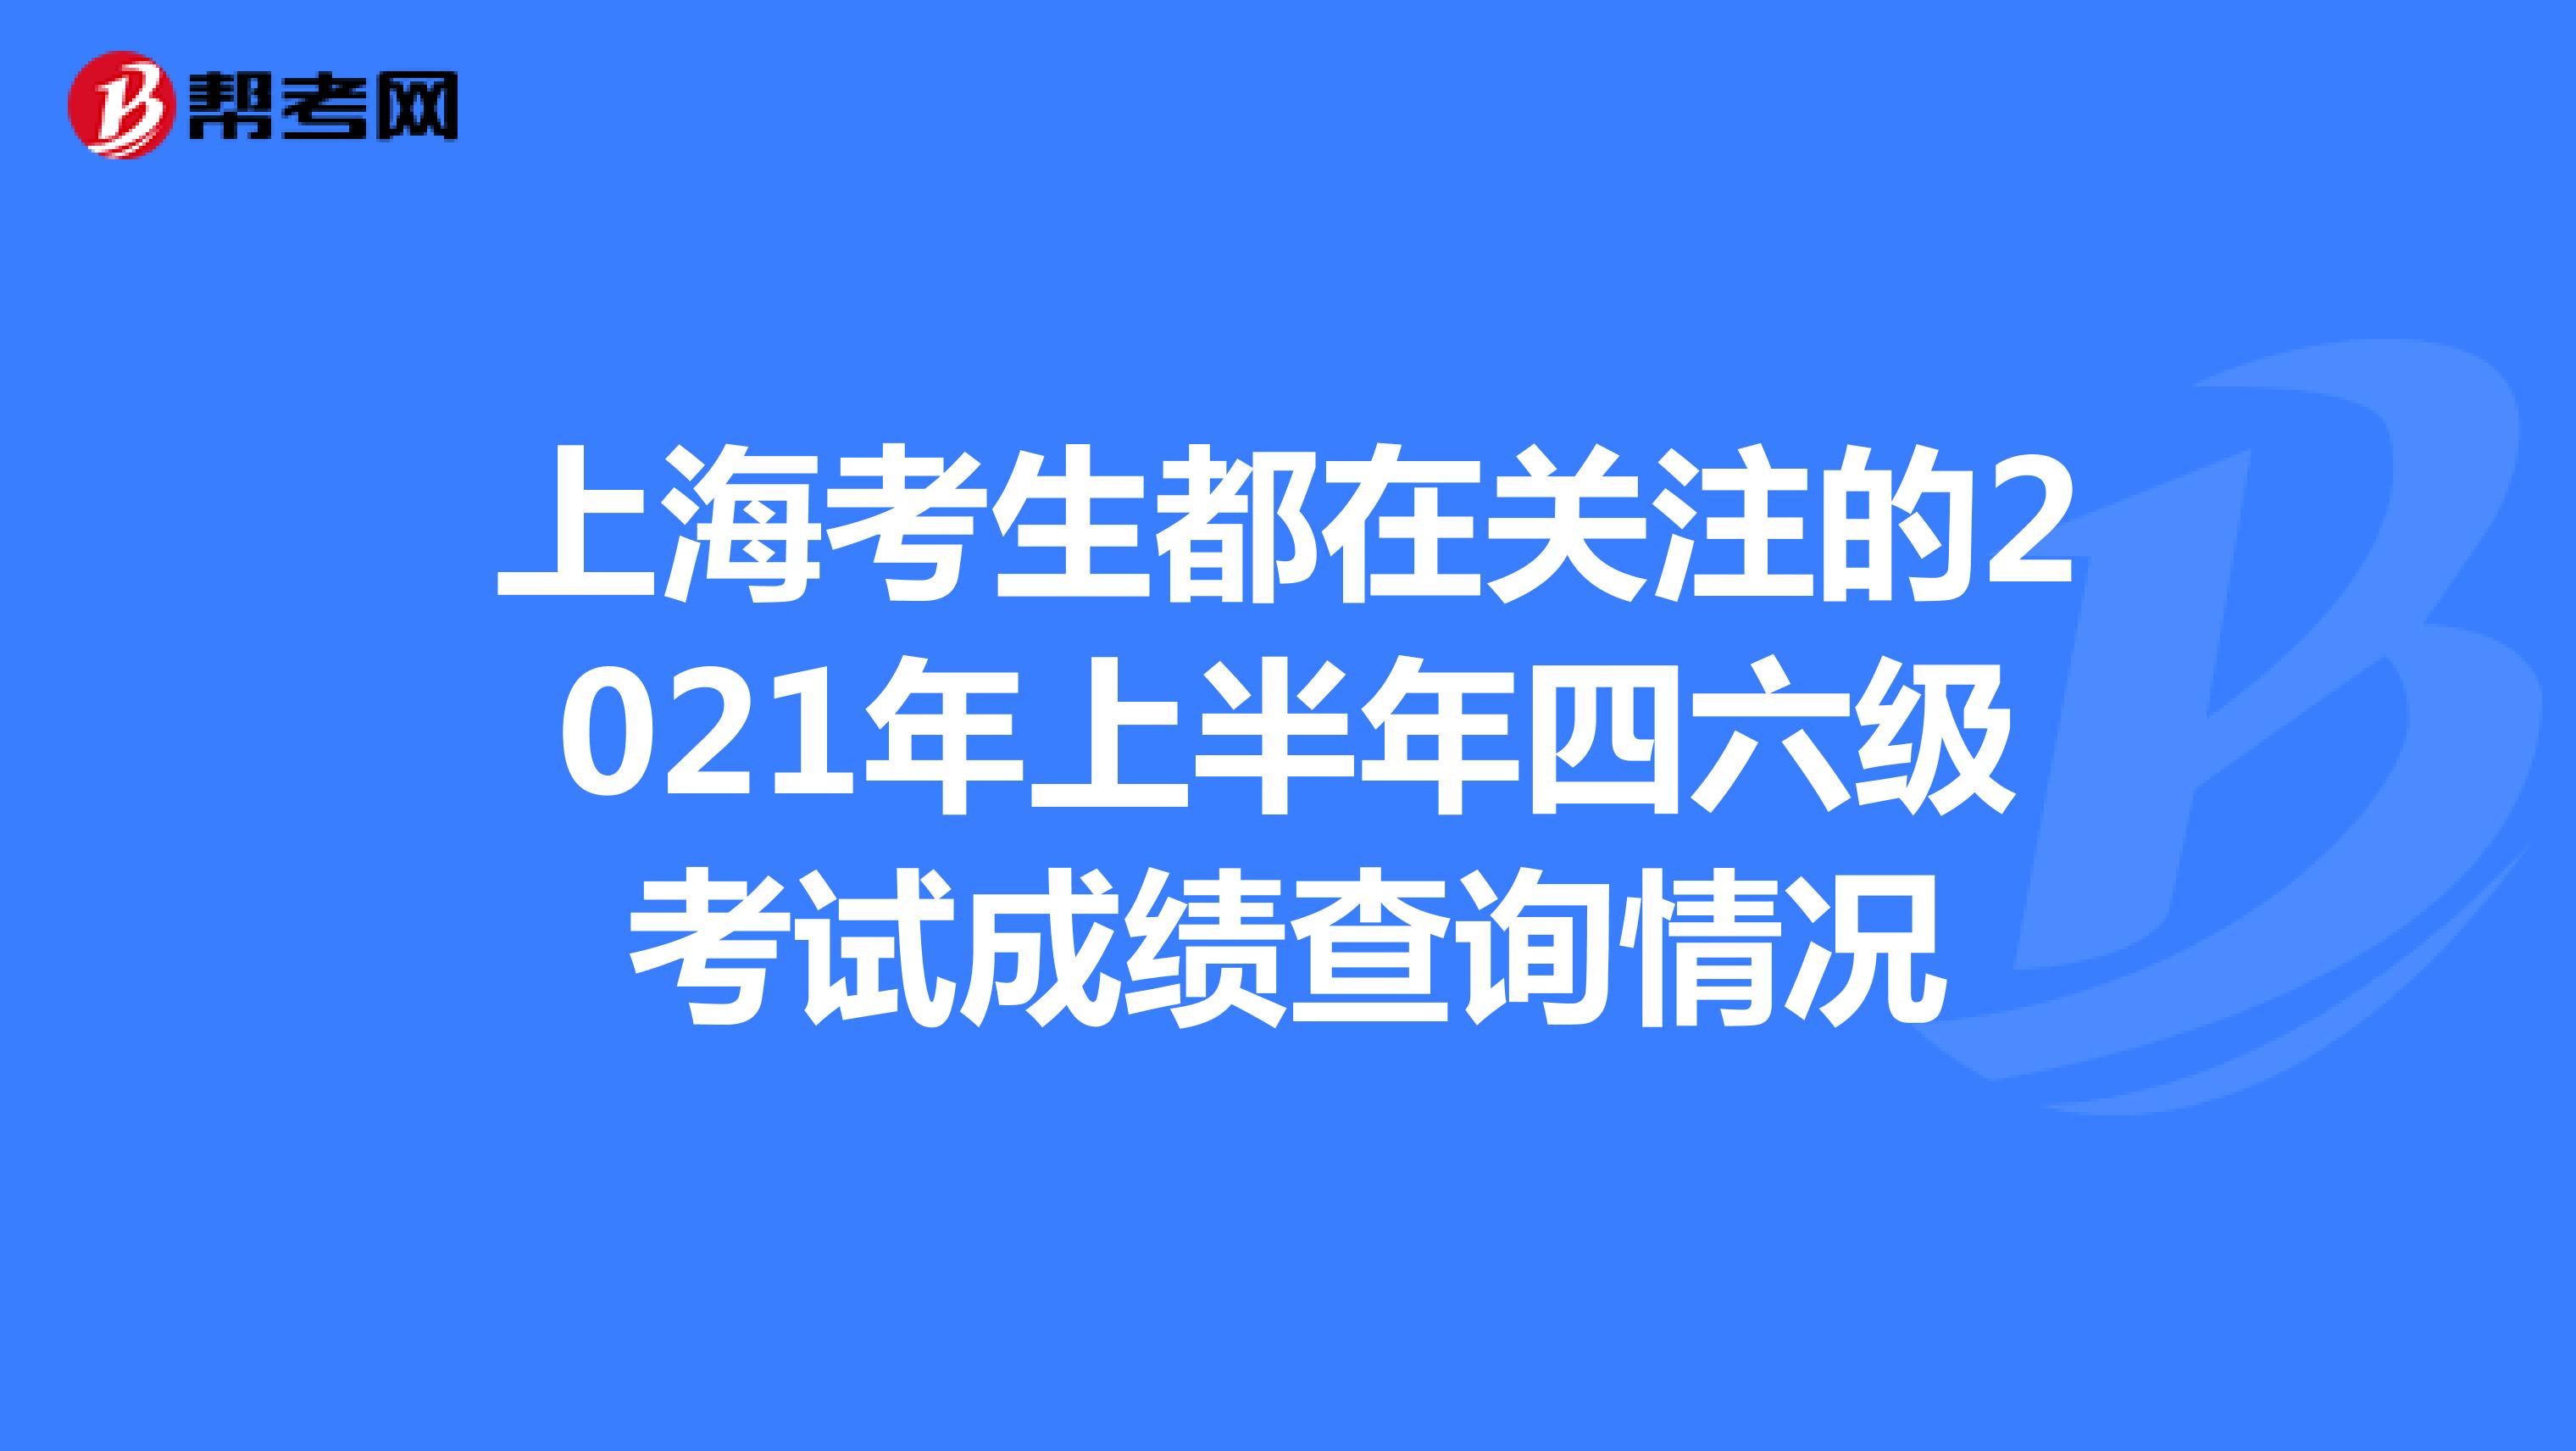 上海考生都在关注的2021年上半年四六级考试成绩查询情况